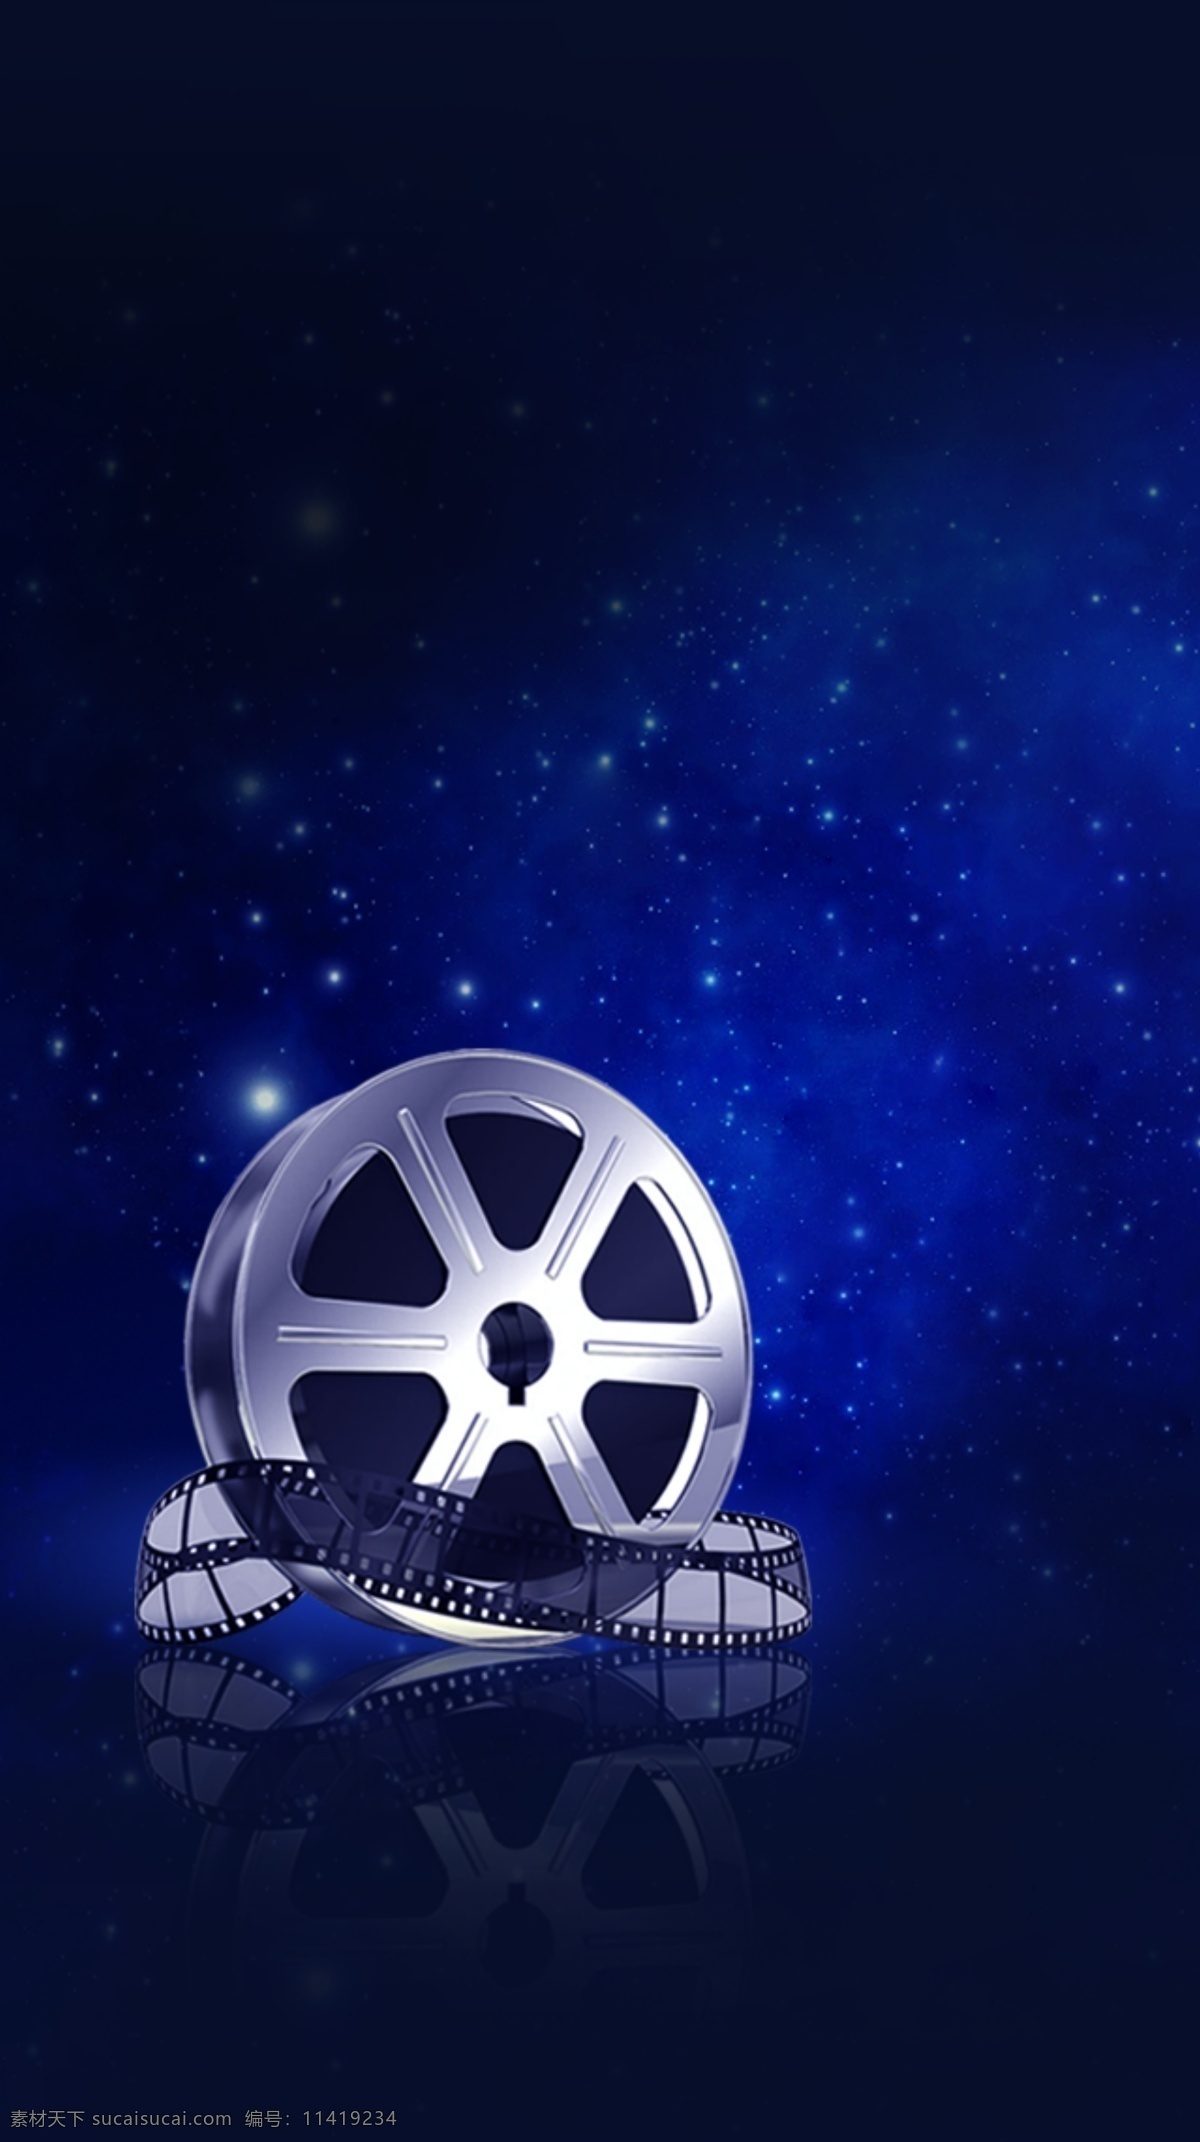 夜空 星空 蓝色 电影 放映机 质感 底纹边框 背景底纹